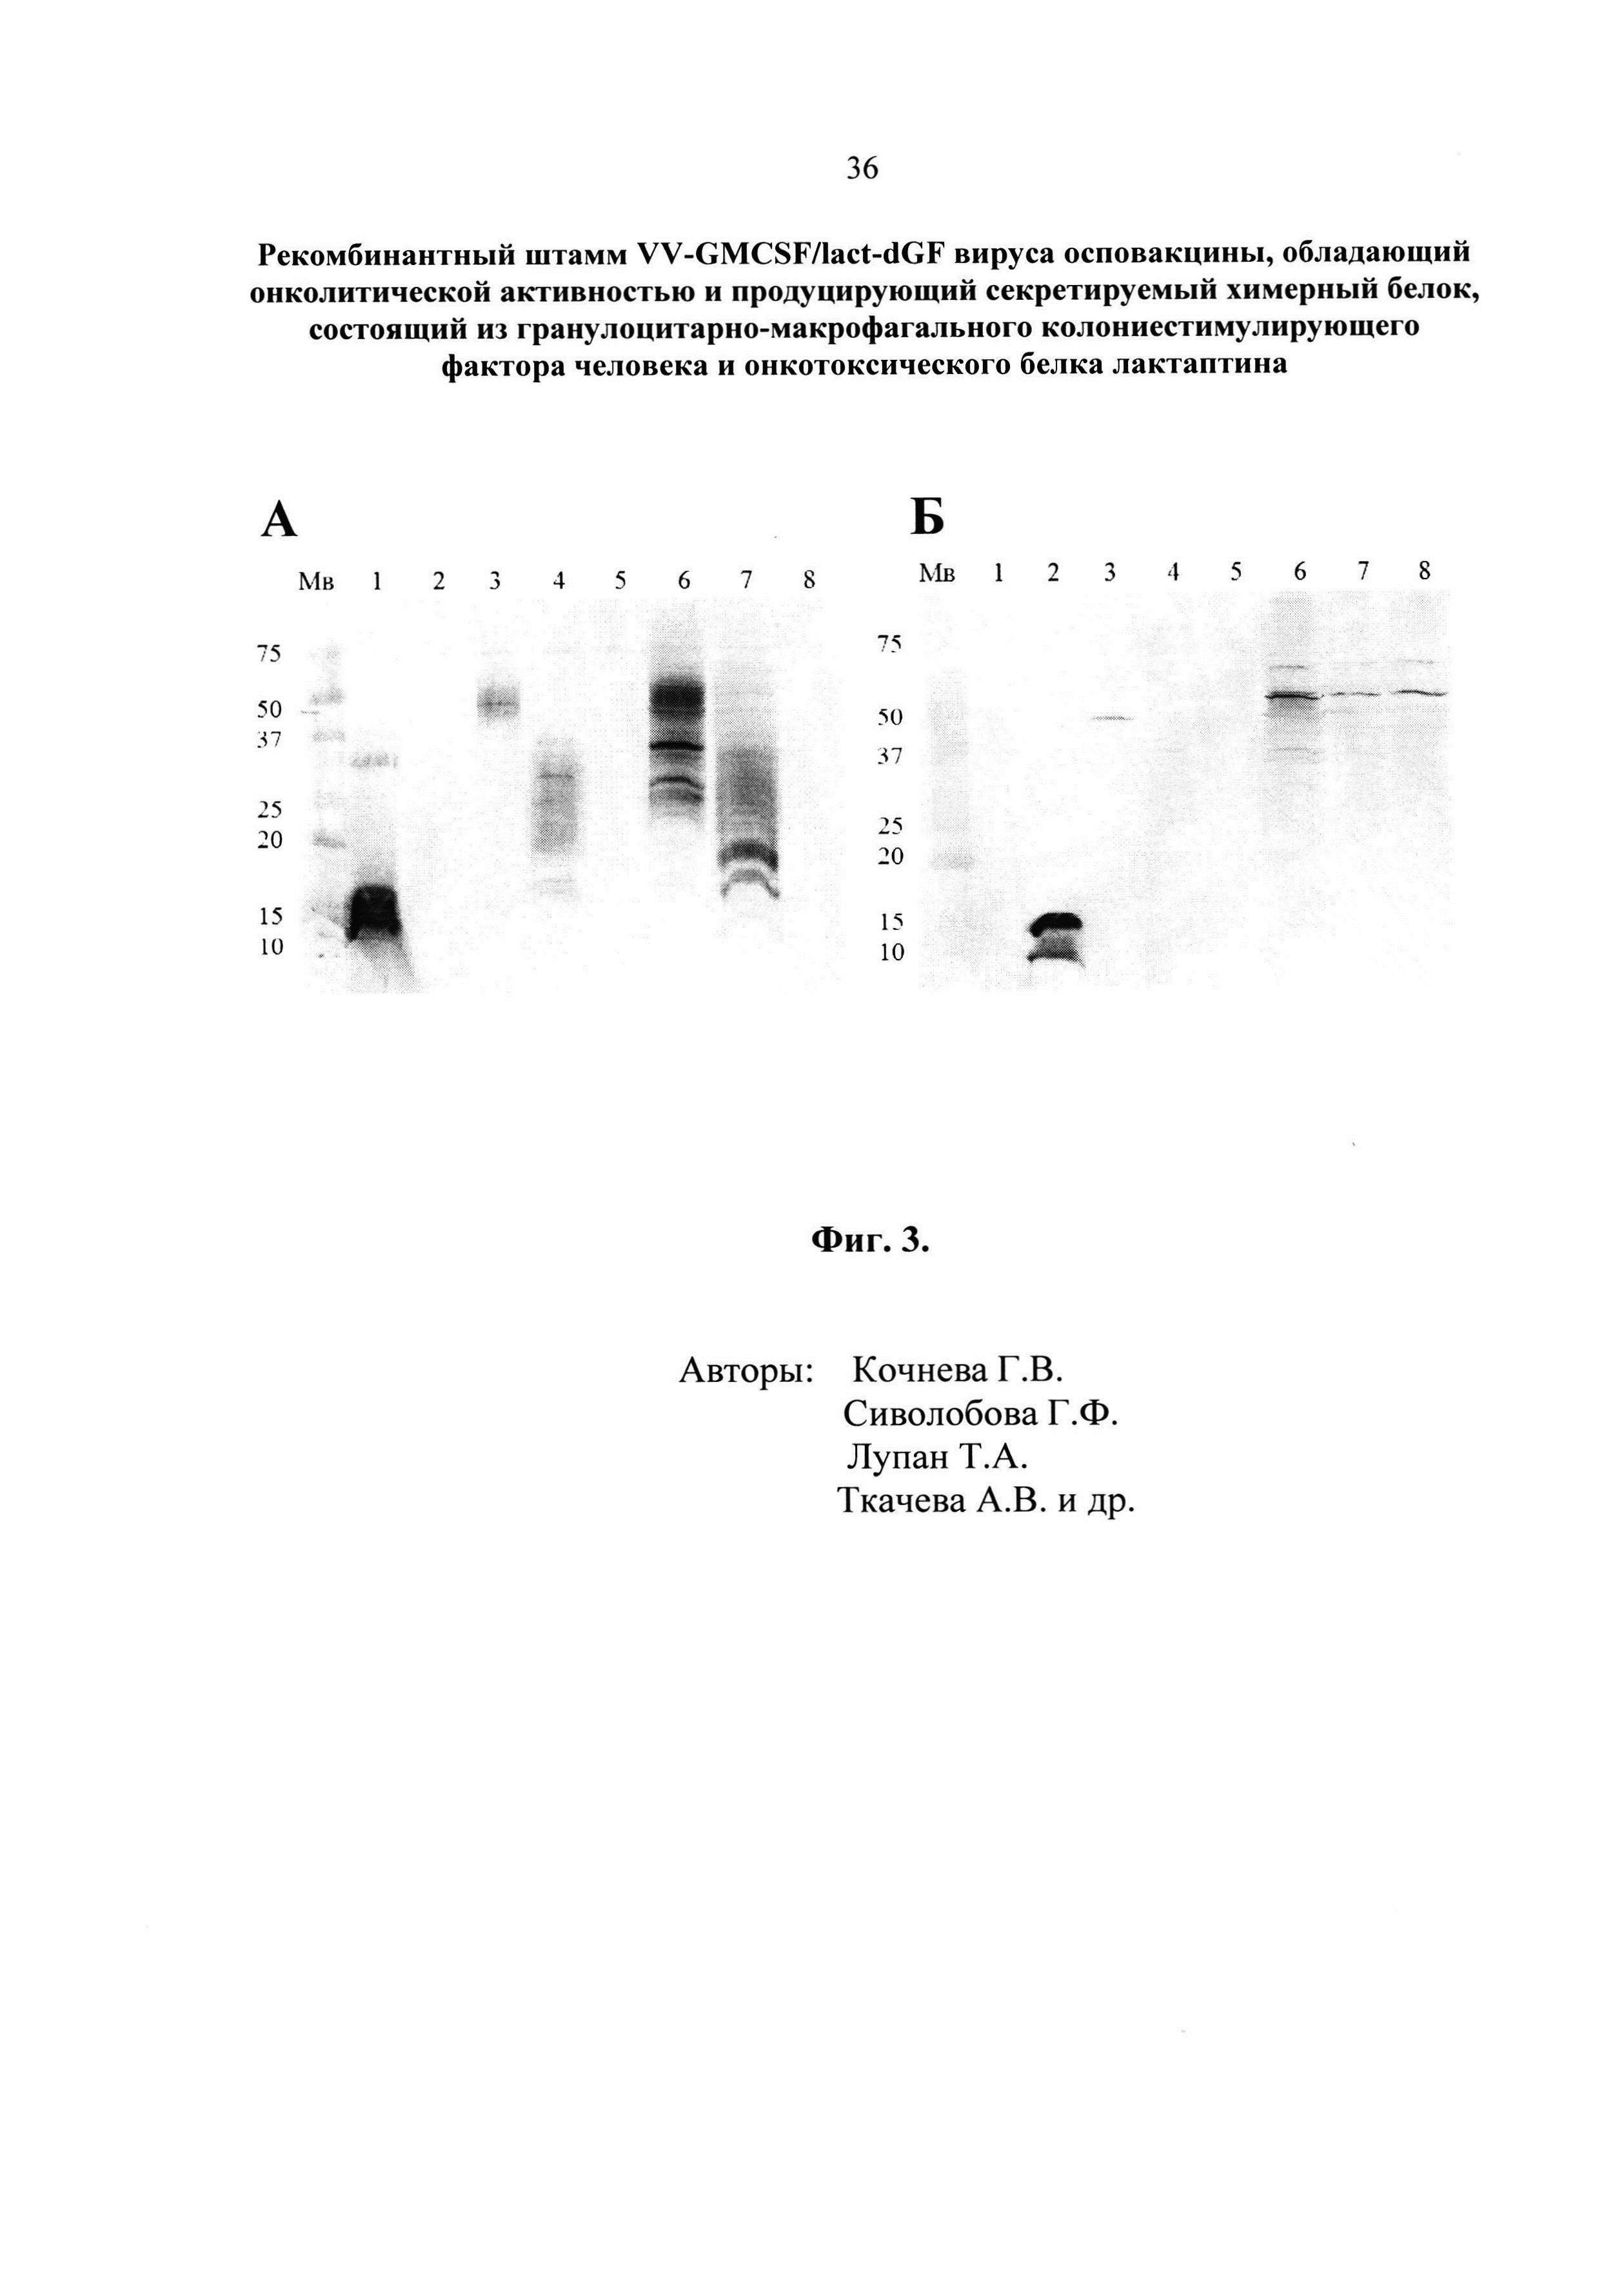 Рекомбинантный штамм VV-GMCSF/lact-dGF вируса осповакцины, обладающий онколитической активностью и продуцирующий секретируемый химерный белок, состоящий из гранулоцитарно-макрофагального колониестимулирующего фактора человека и онкотоксического белка лактаптина